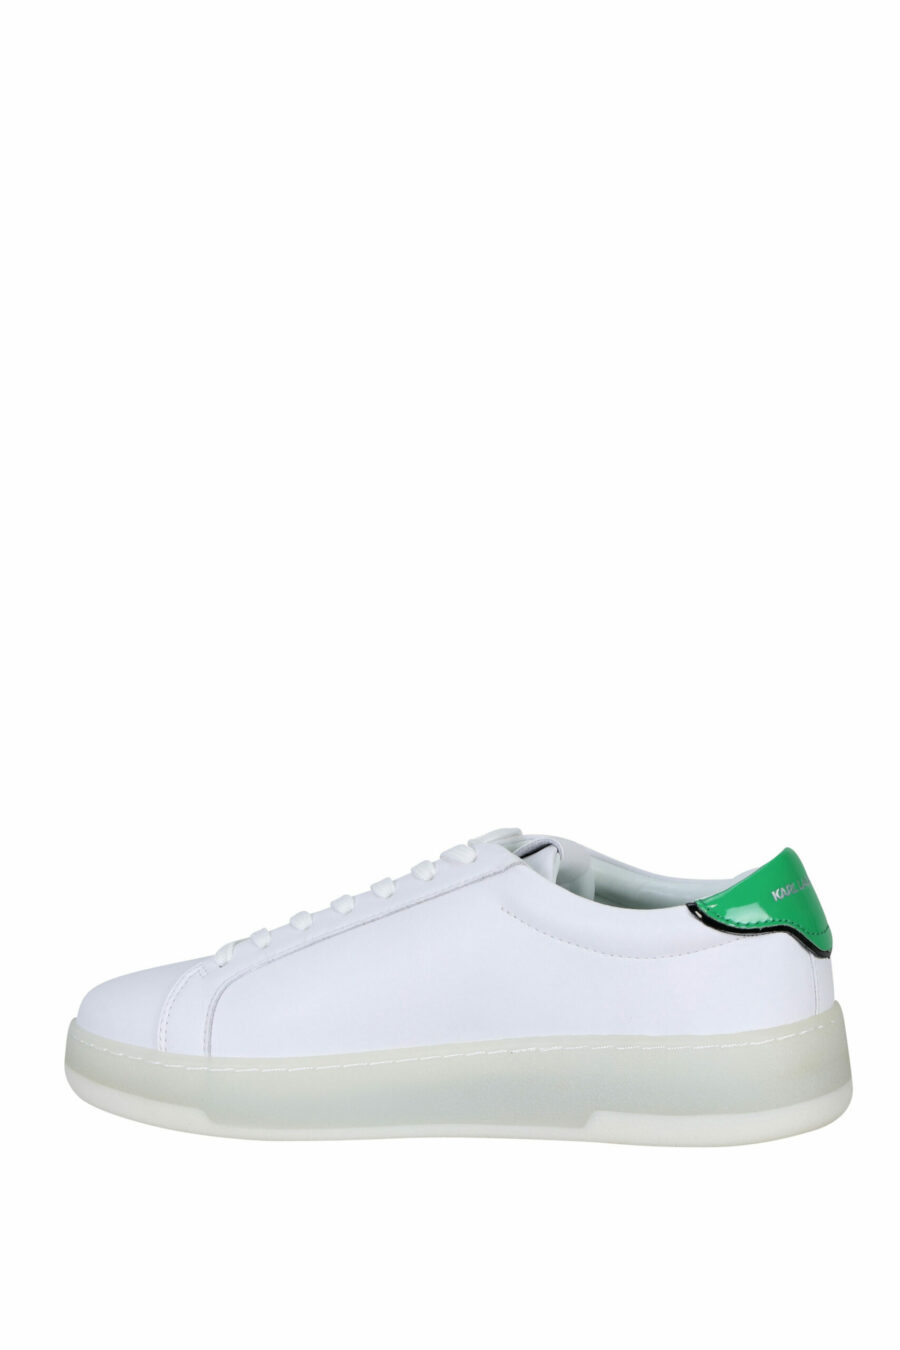 Baskets blanches avec détails verts et logo "st rue guillaume" - 5059529291289 2 scaled